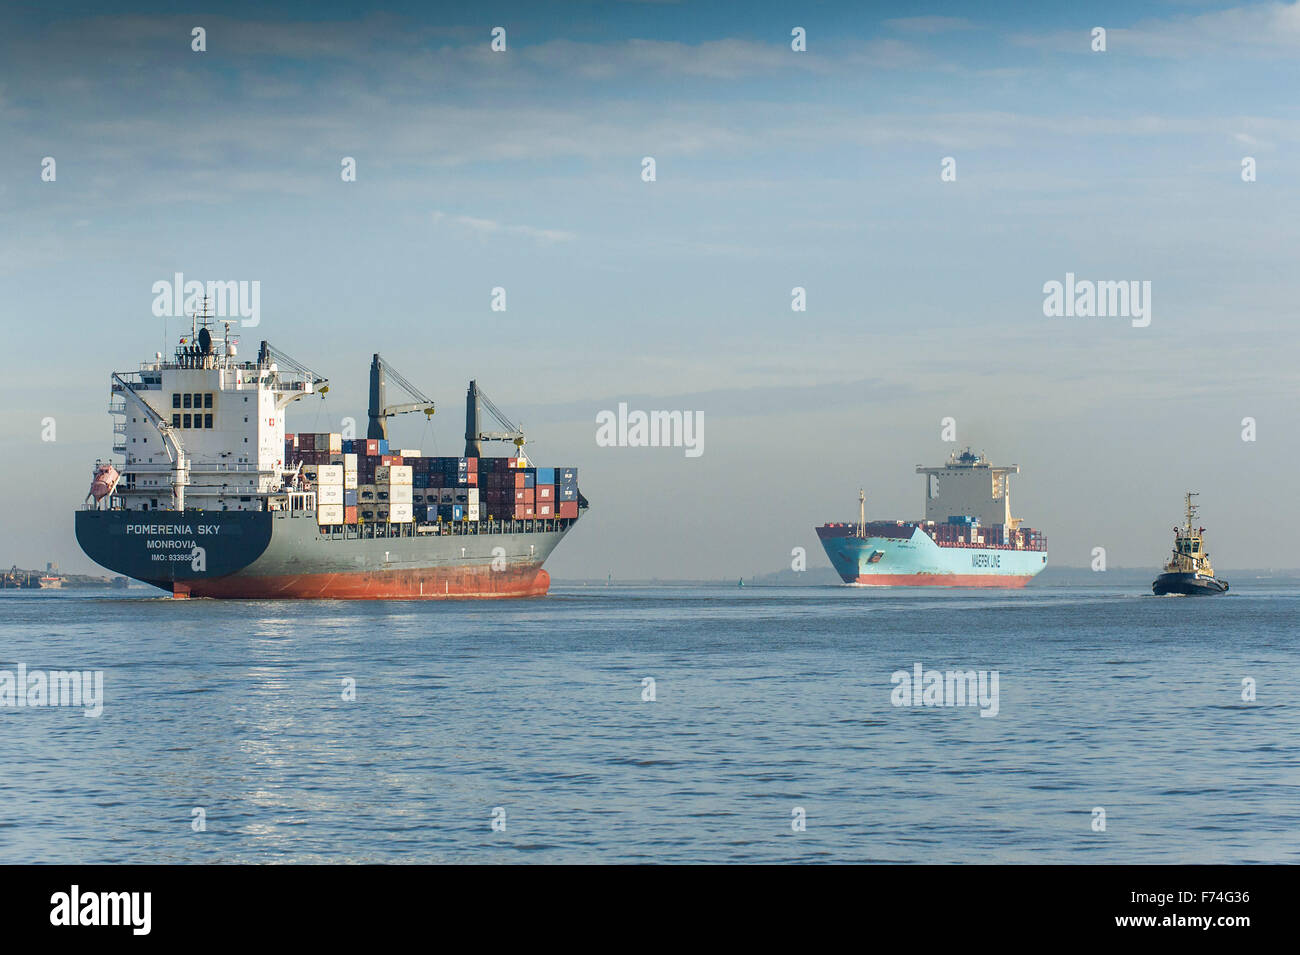 Les porte-conteneurs, Pomerenia Ciel et Maersk Lota le passé comme ils naviguer sur la Tamise. Banque D'Images